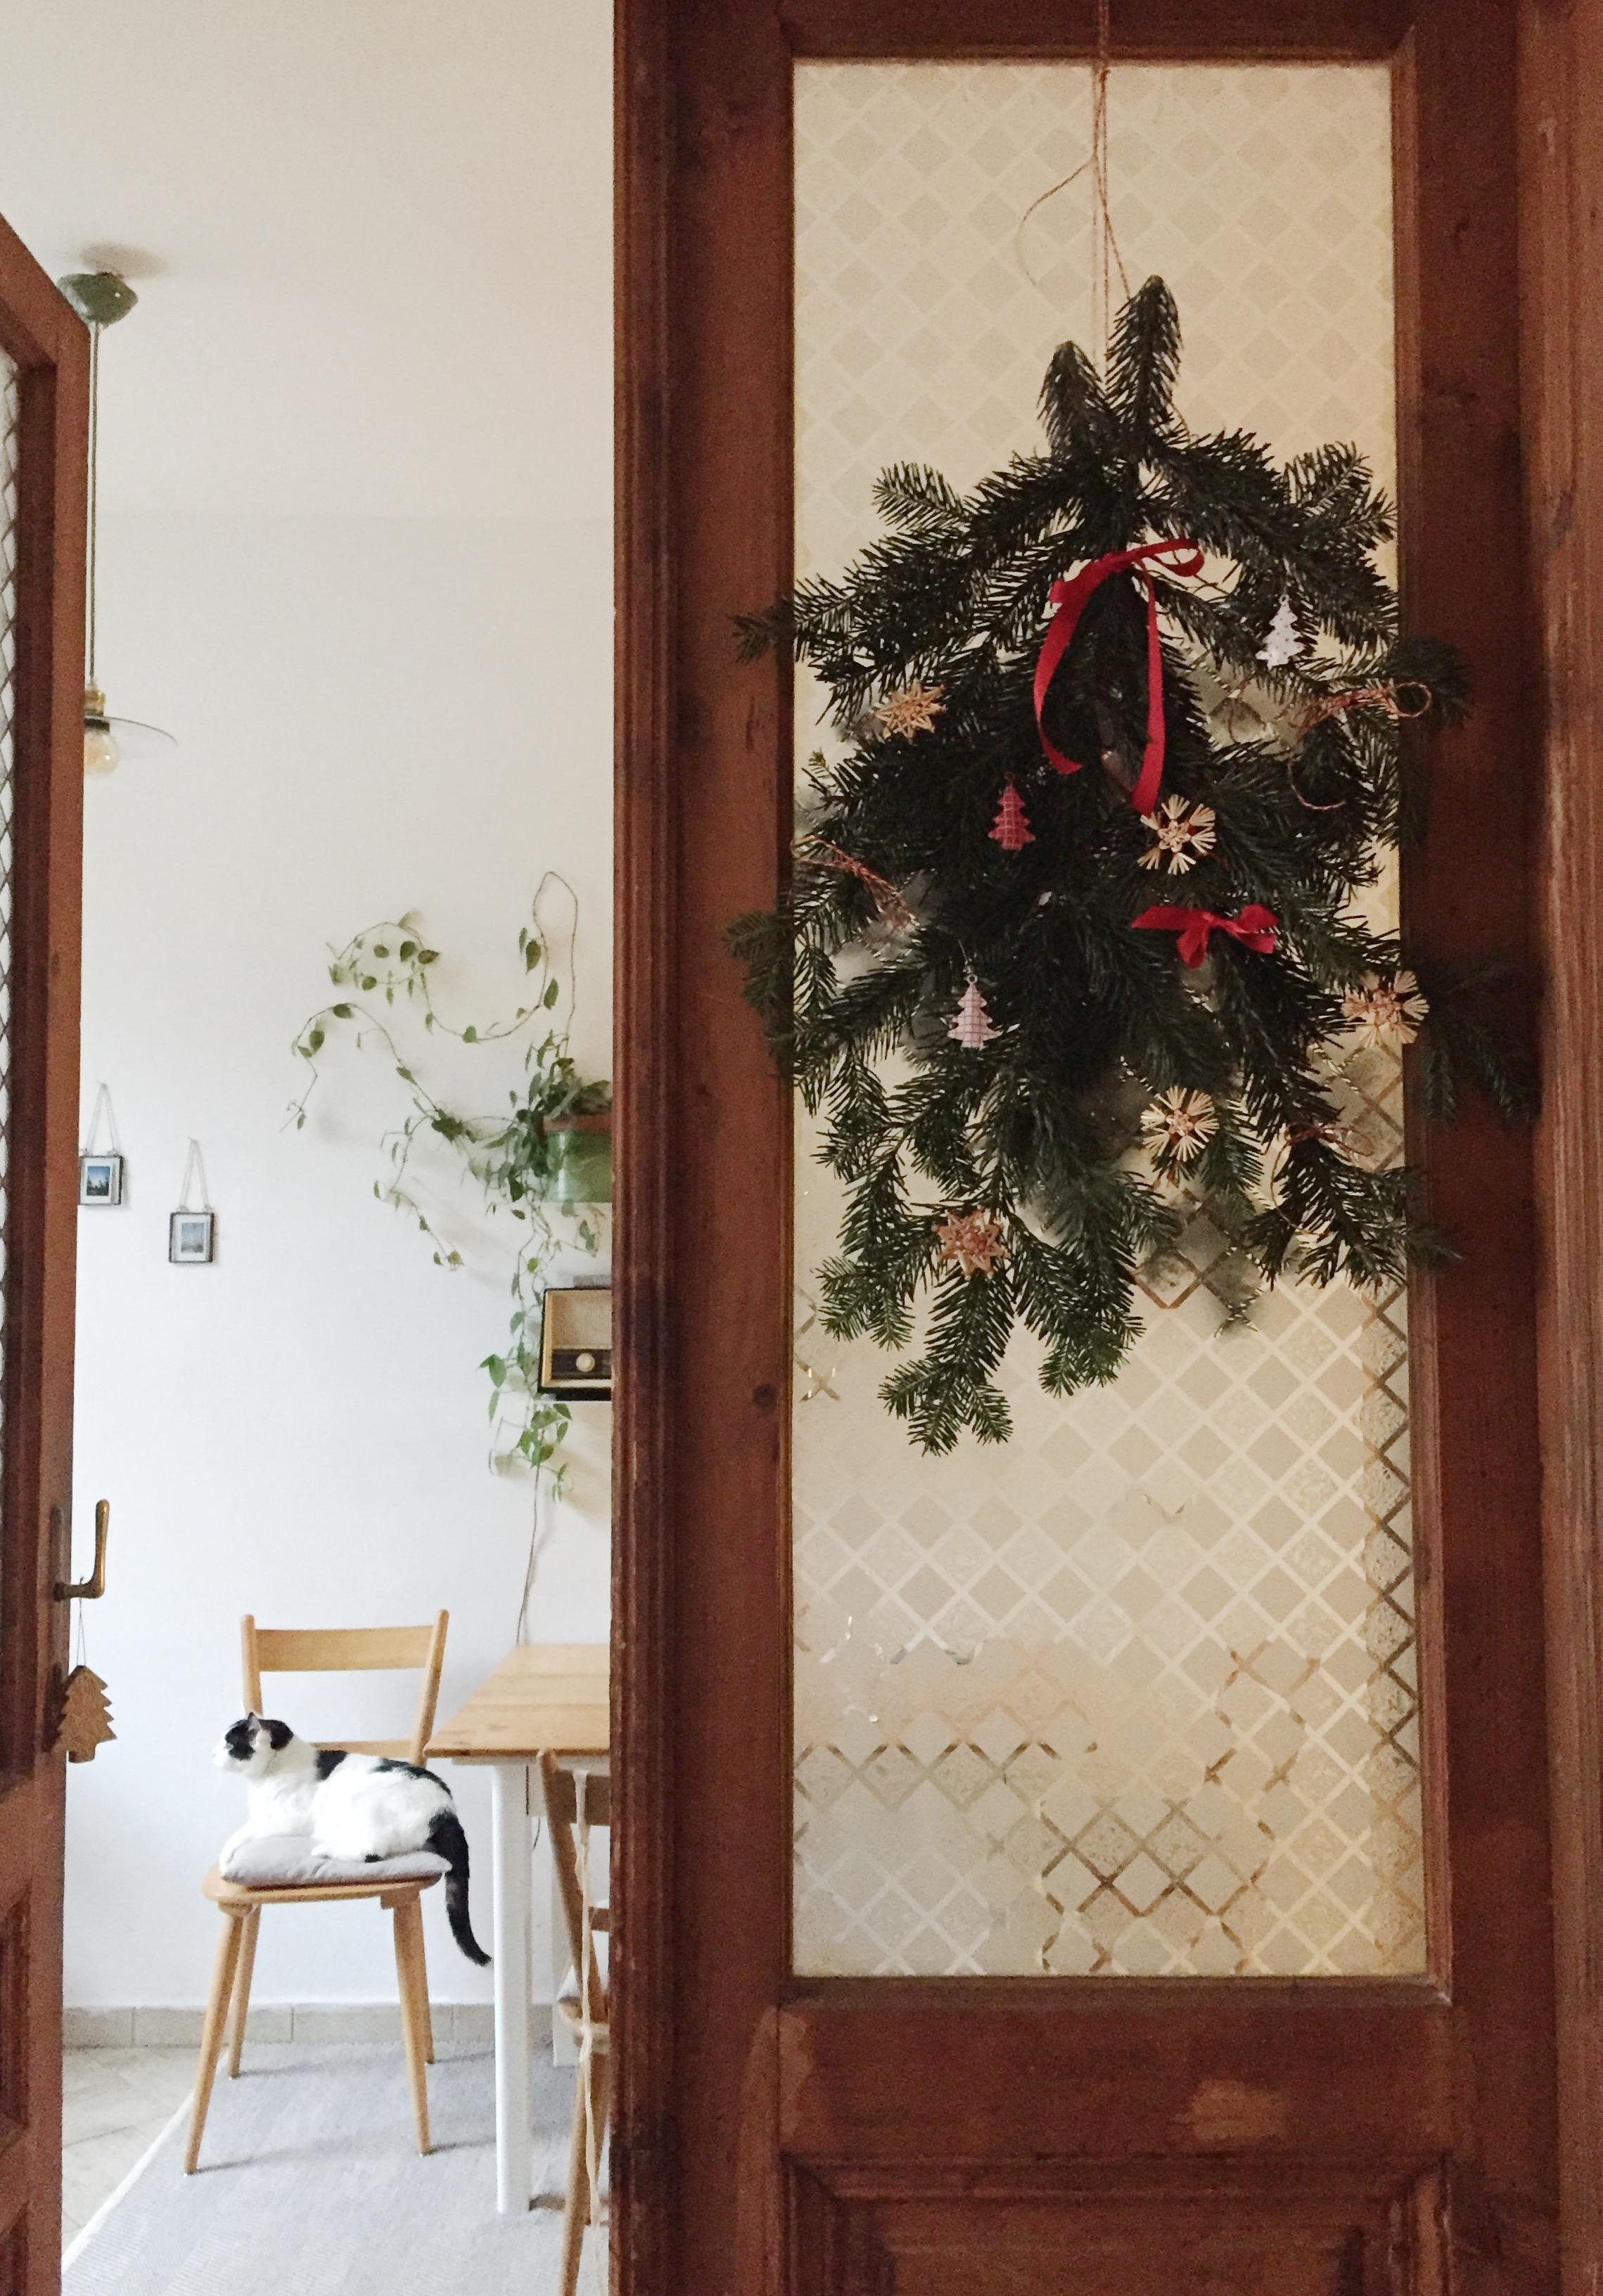 #weihnachtsdeko fertig, jetzt heißts warten 😊🎄🐈 
#diy #weihnachten #altbau #küche #vintage #retro #holz 